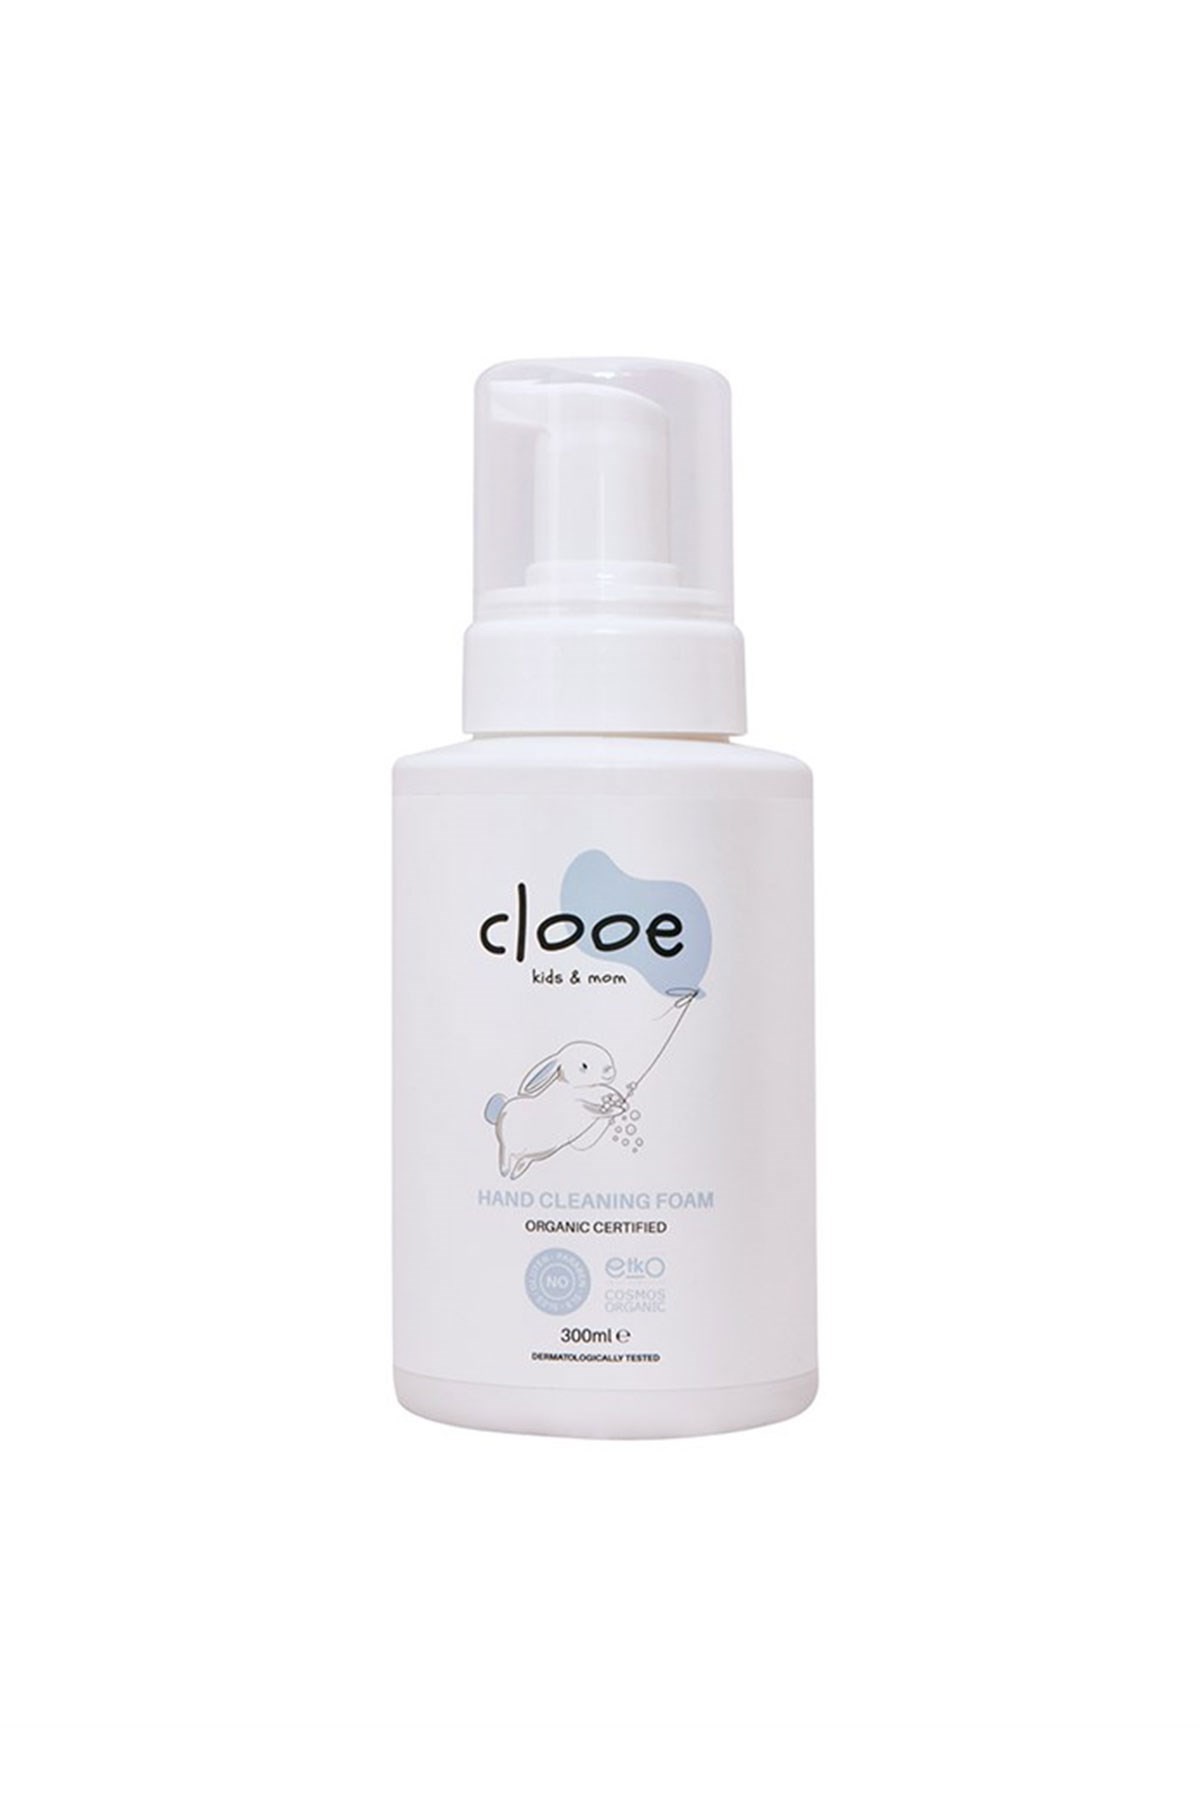 Clooe Organik Sertifikalı El Temizleme Köpüğü